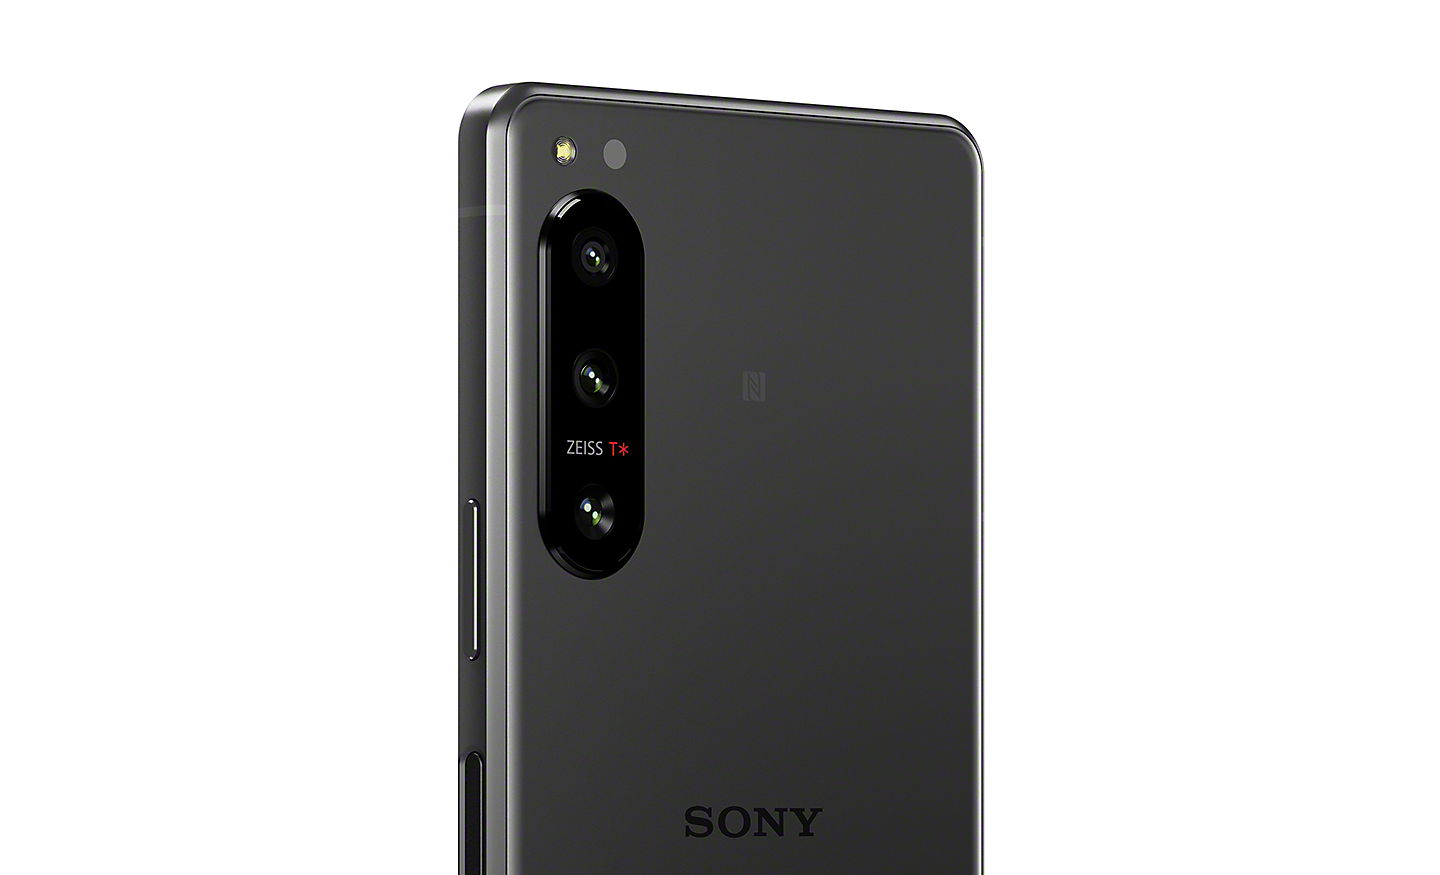 Záber zblízka na fotoaparát s trojitým objektívom smartfónu Xperia 5 IV, ktorý zobrazuje logo povrchovej úpravy ZEISS T*